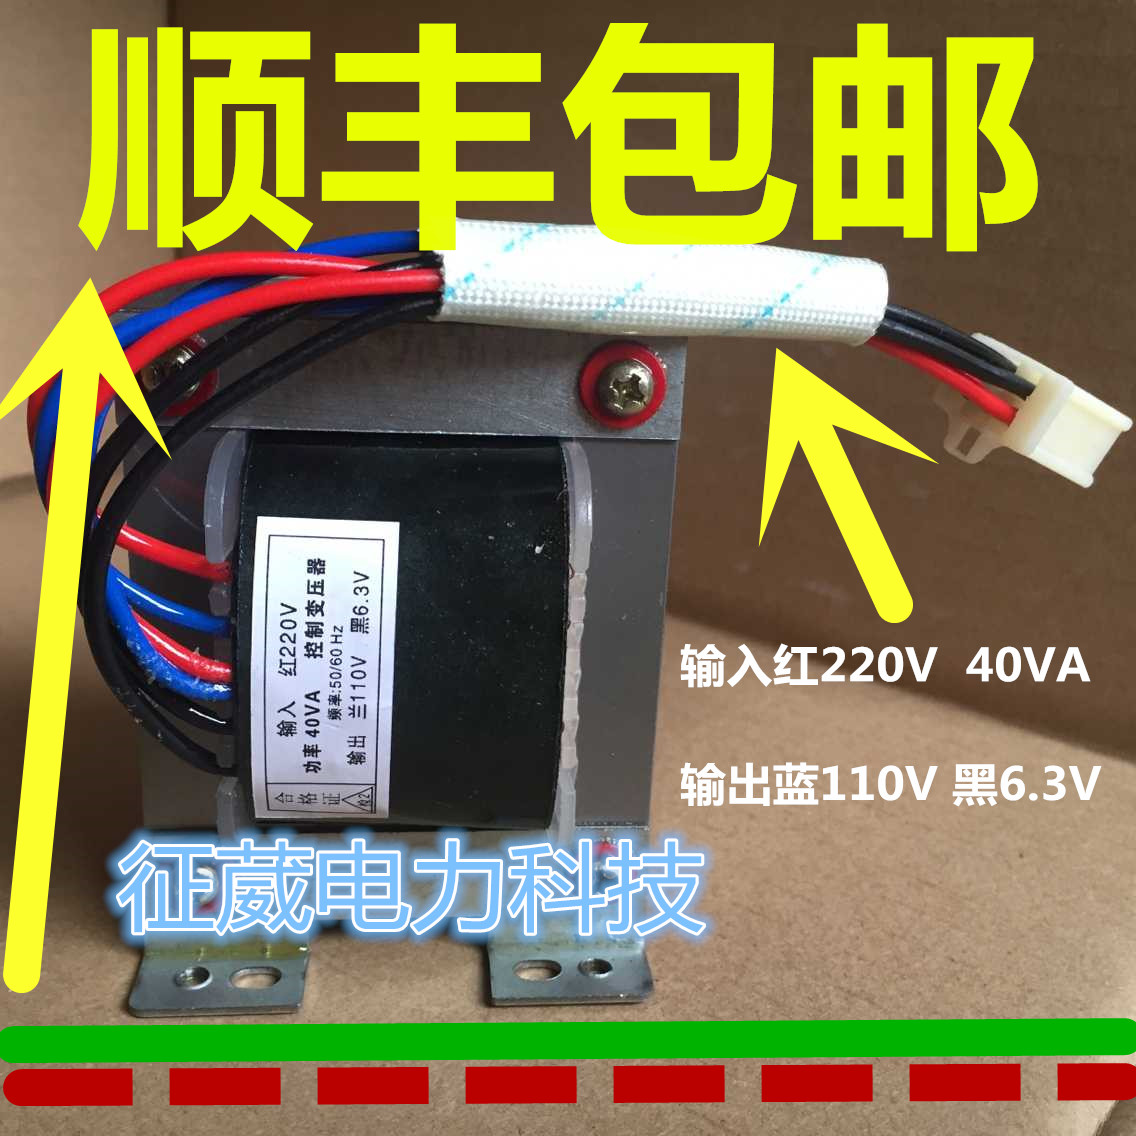 40VA 控制变压器 输入红220V 输出兰110V 黑6.3